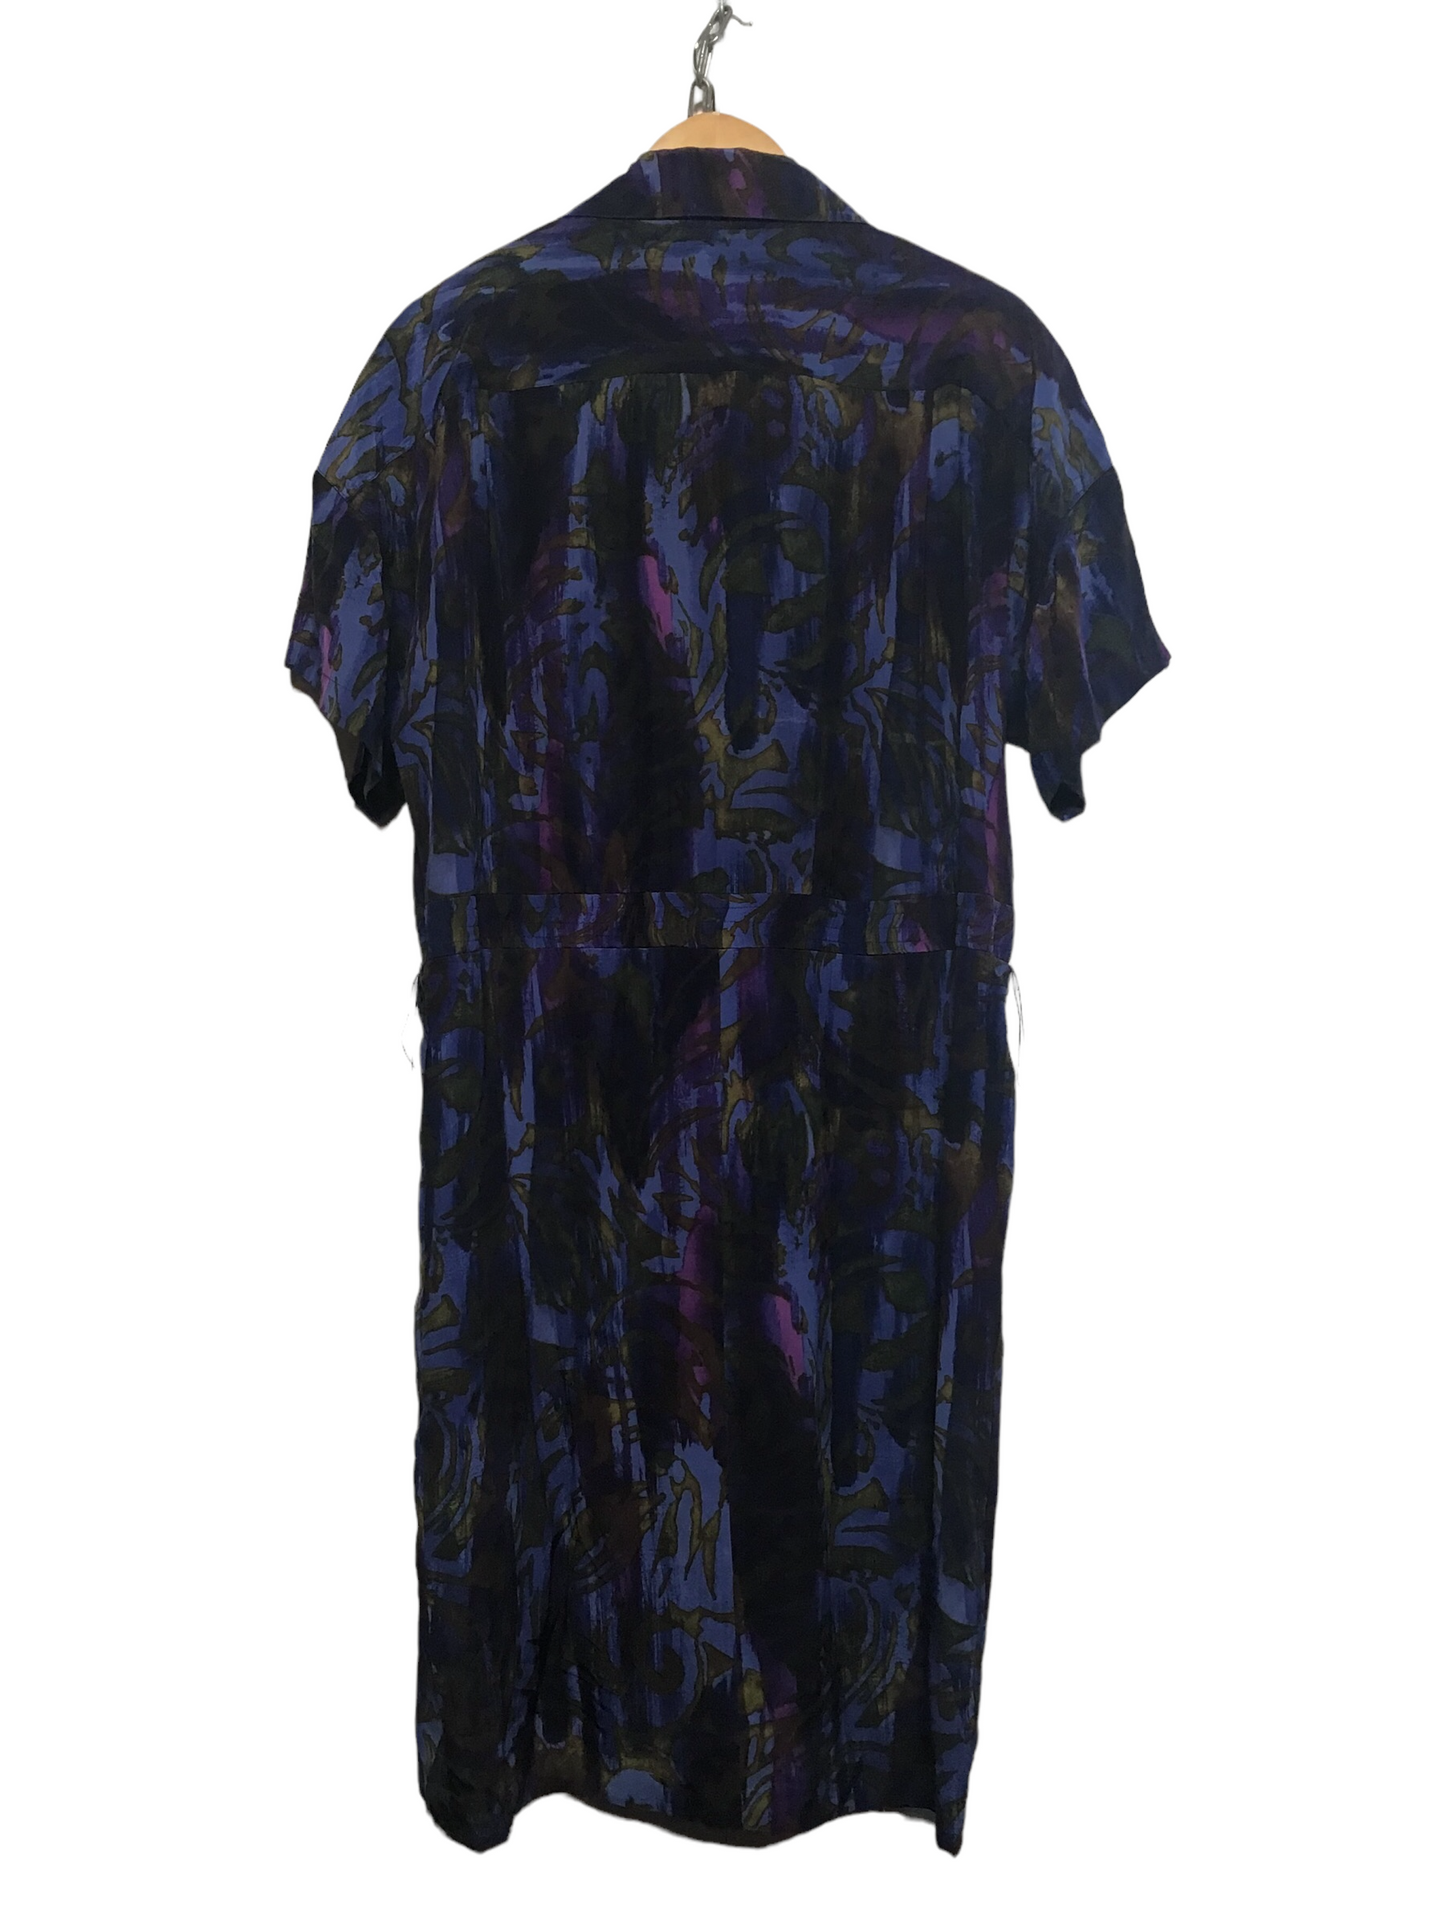 Silk Patterned Dress (Size L)